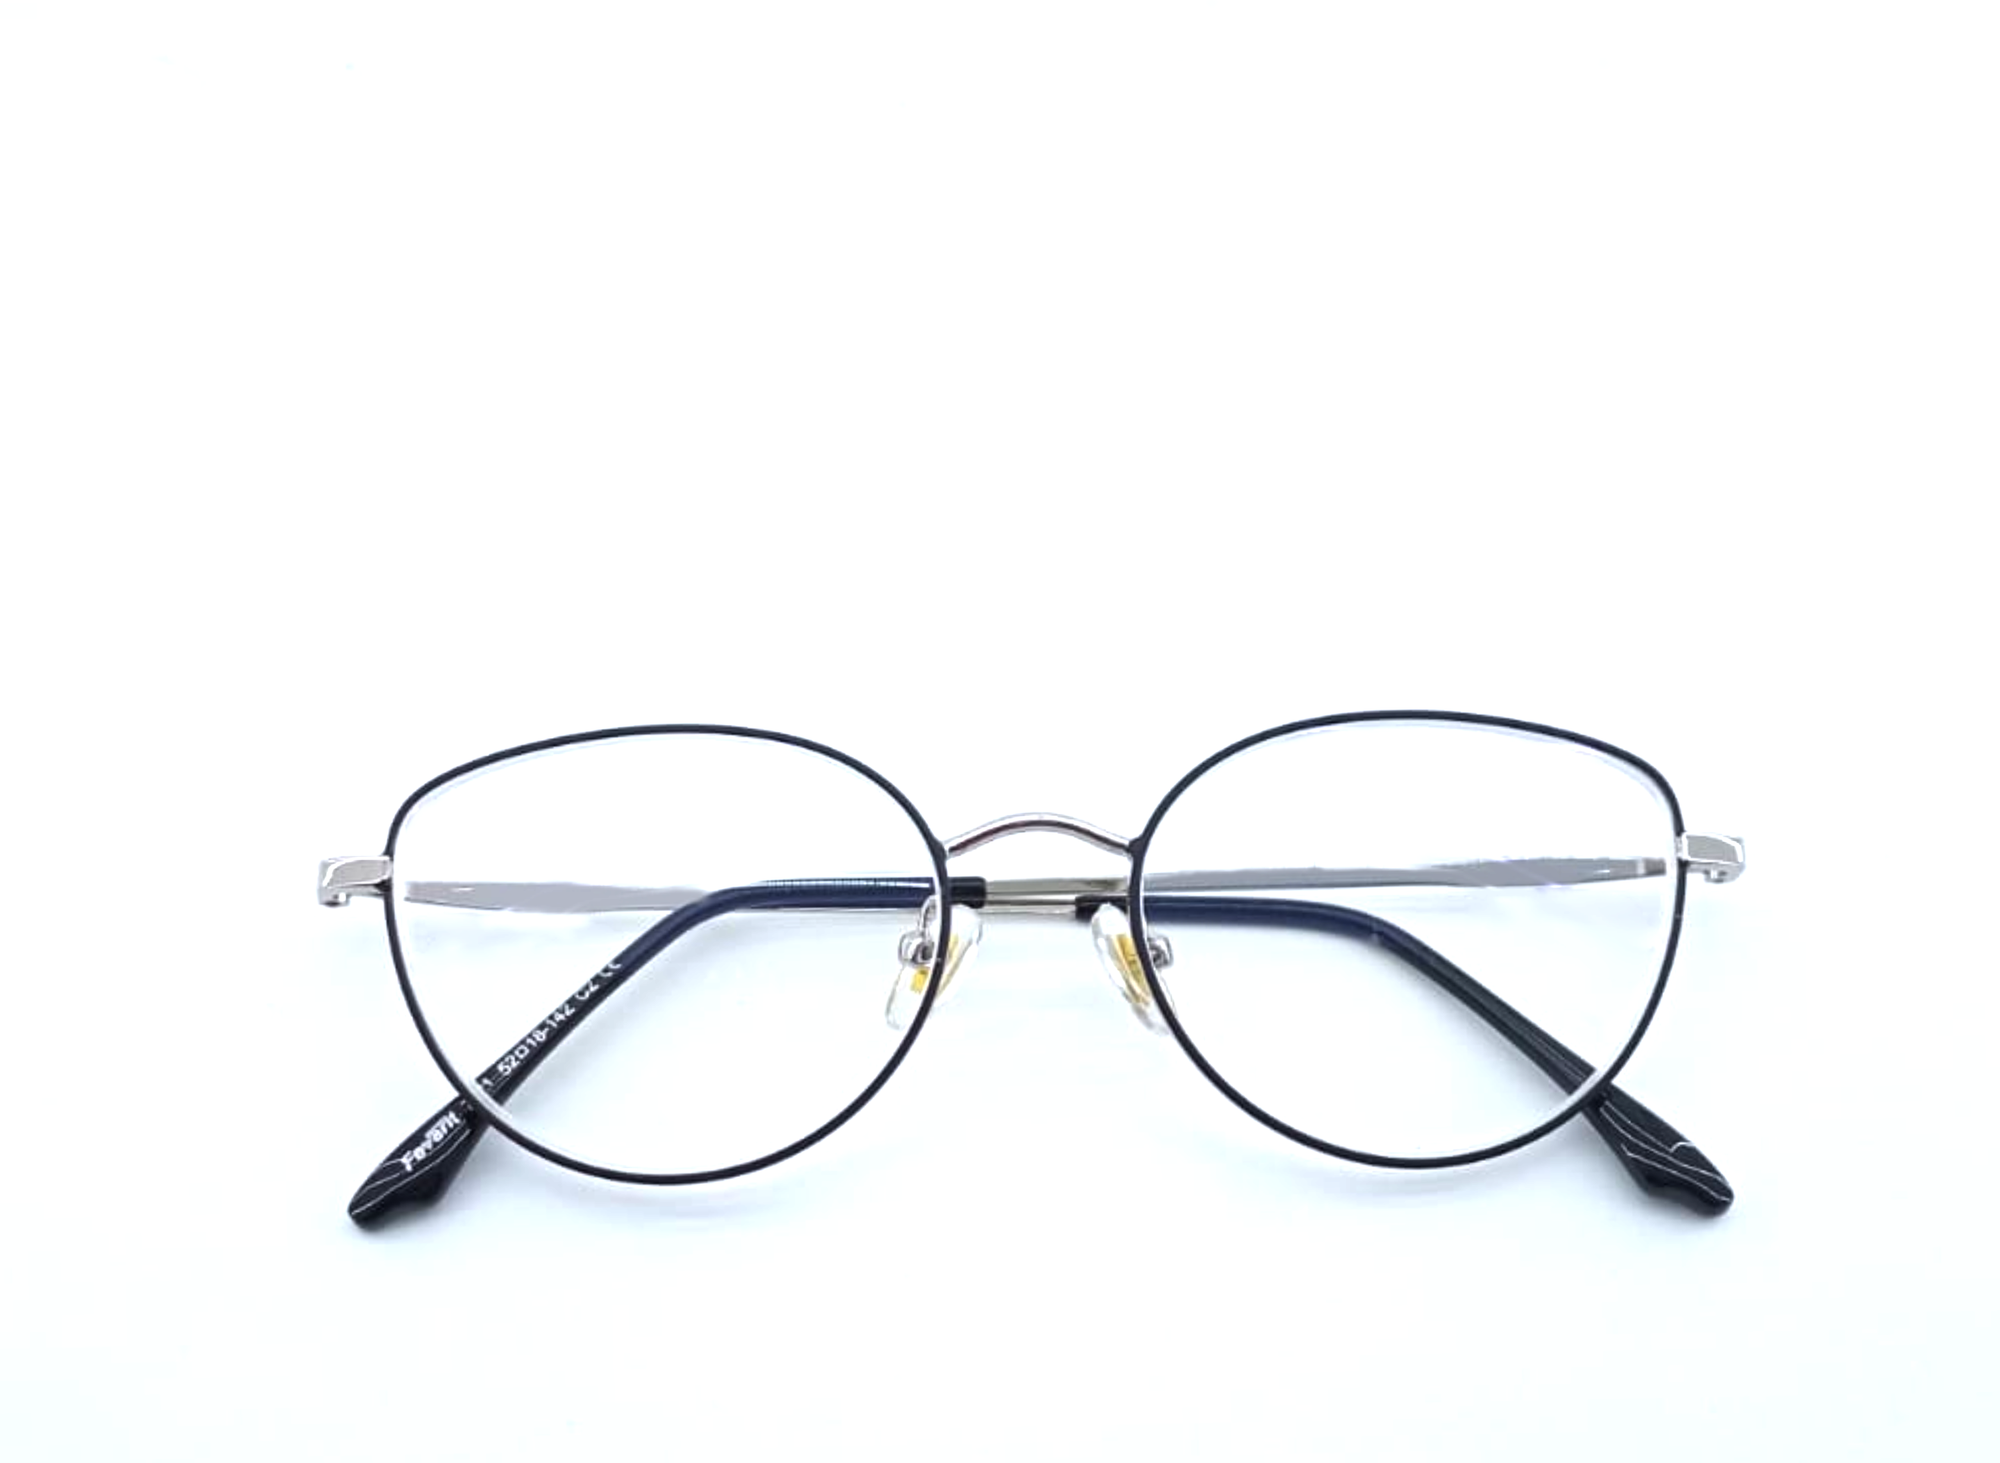 Готовые очки для зрения с межзрачковым расстоянием 58-60 мм и диоптриями -2.0